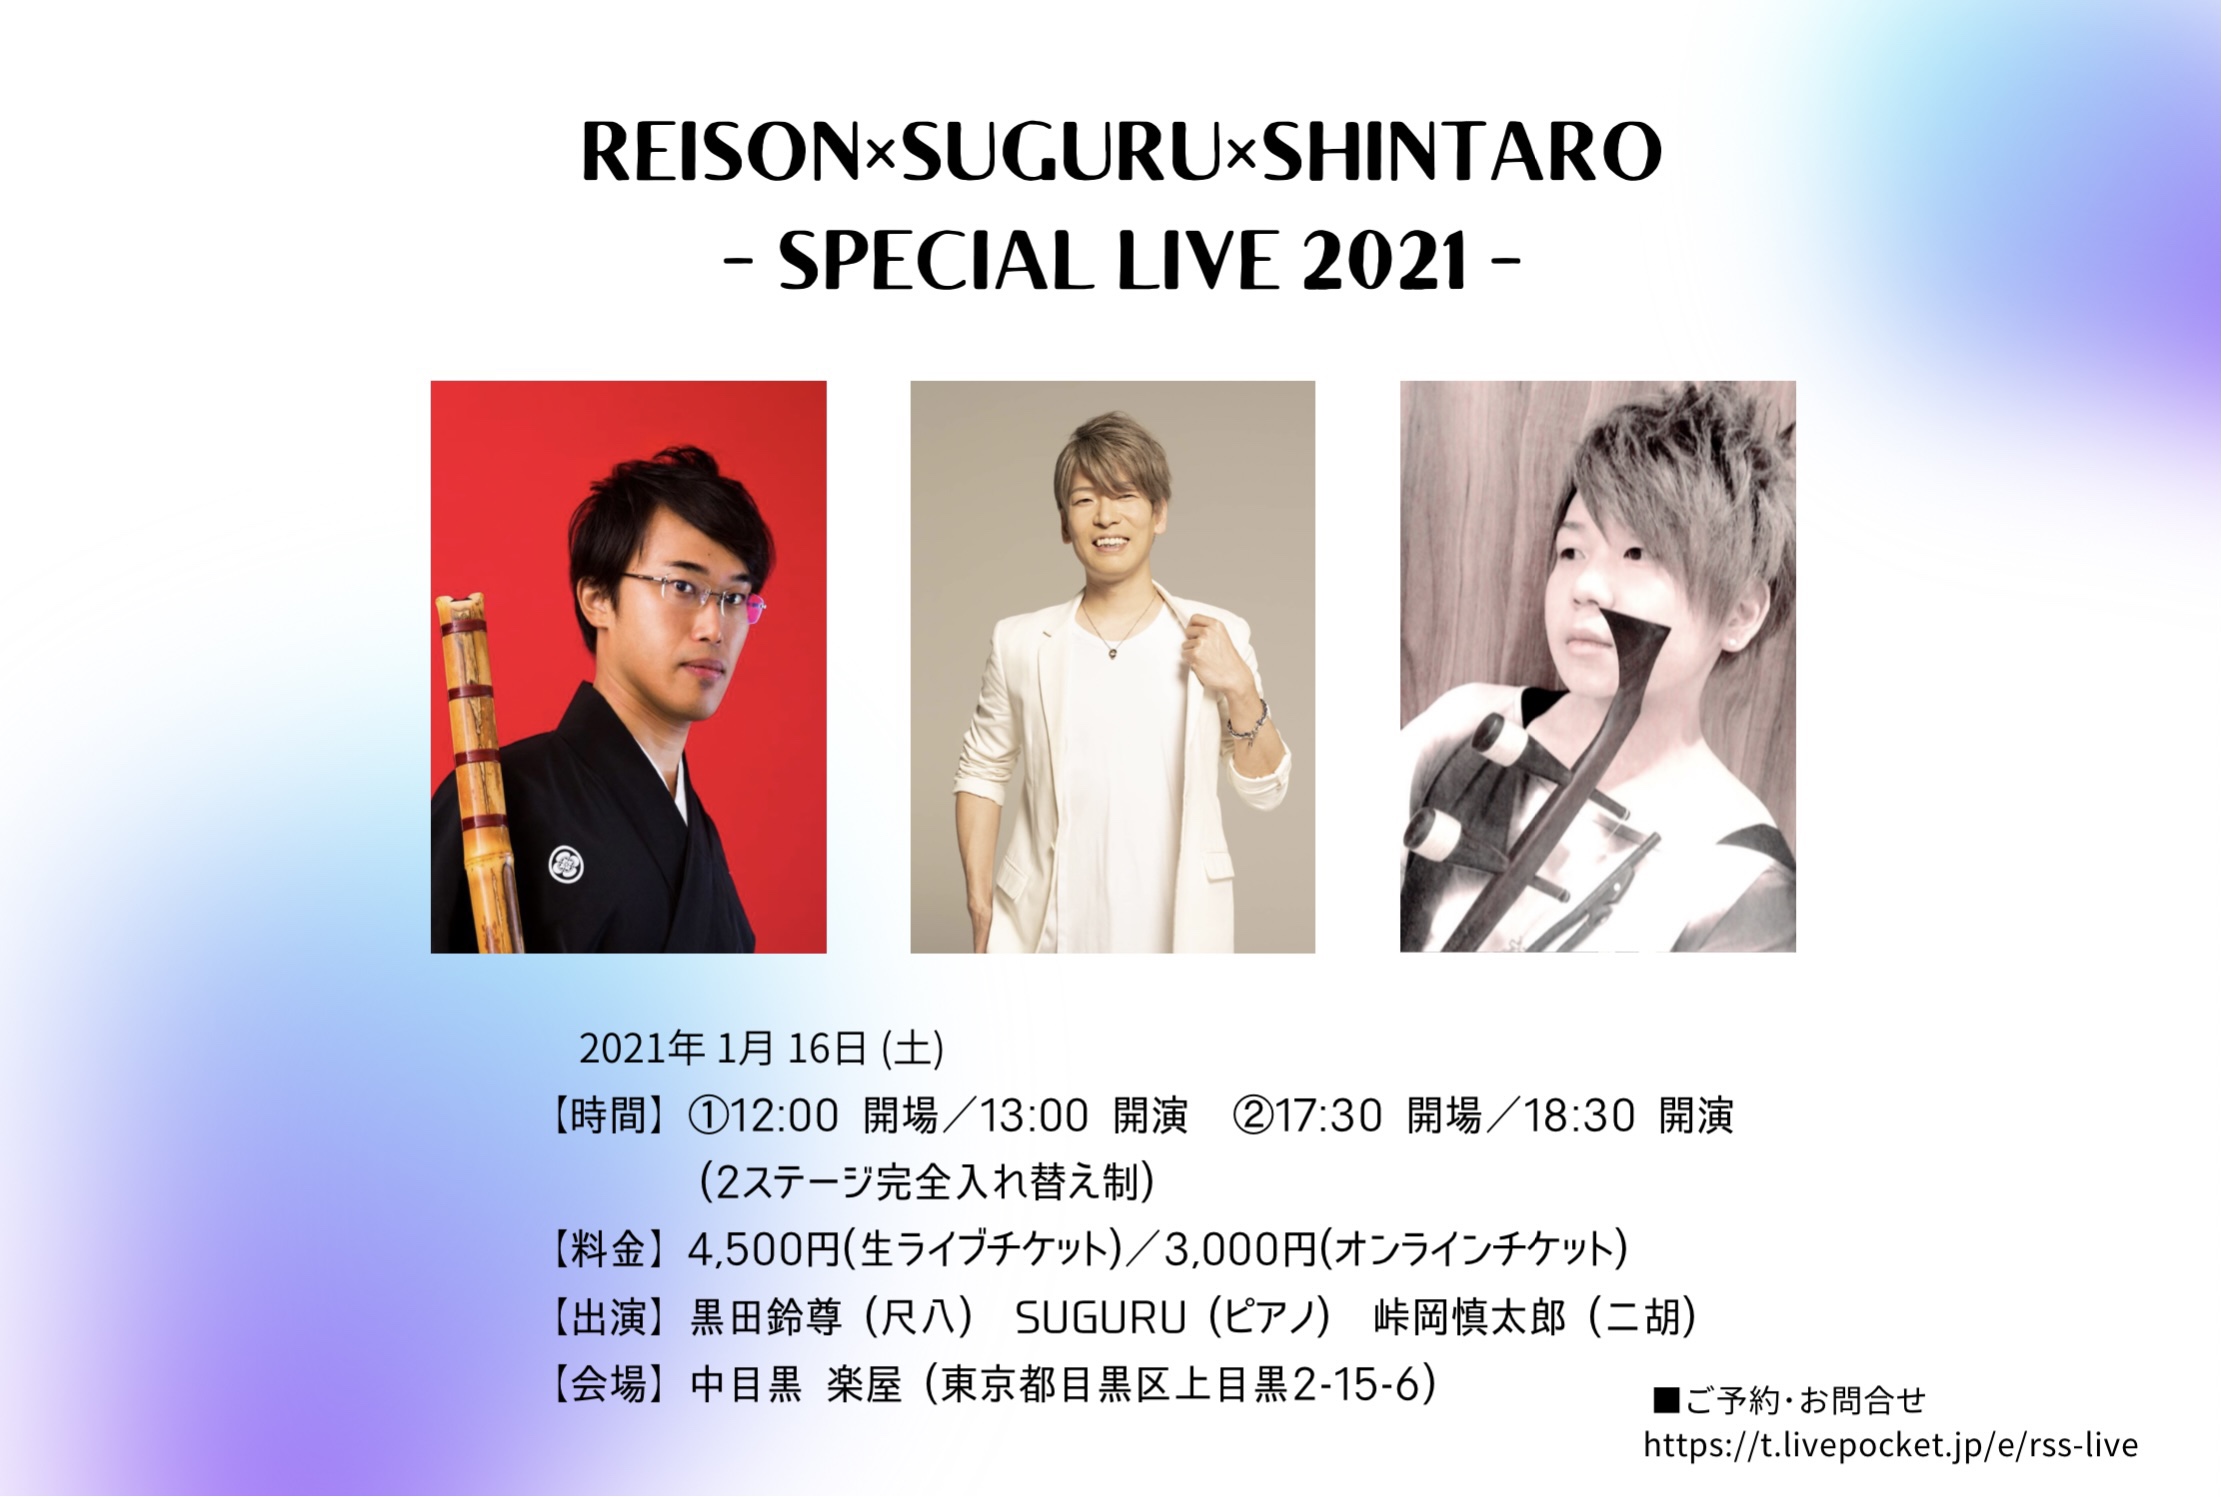 REISON×SUGURU×SHINTARO  -Special Online Live 2021- (終演後アーカイブ視聴)